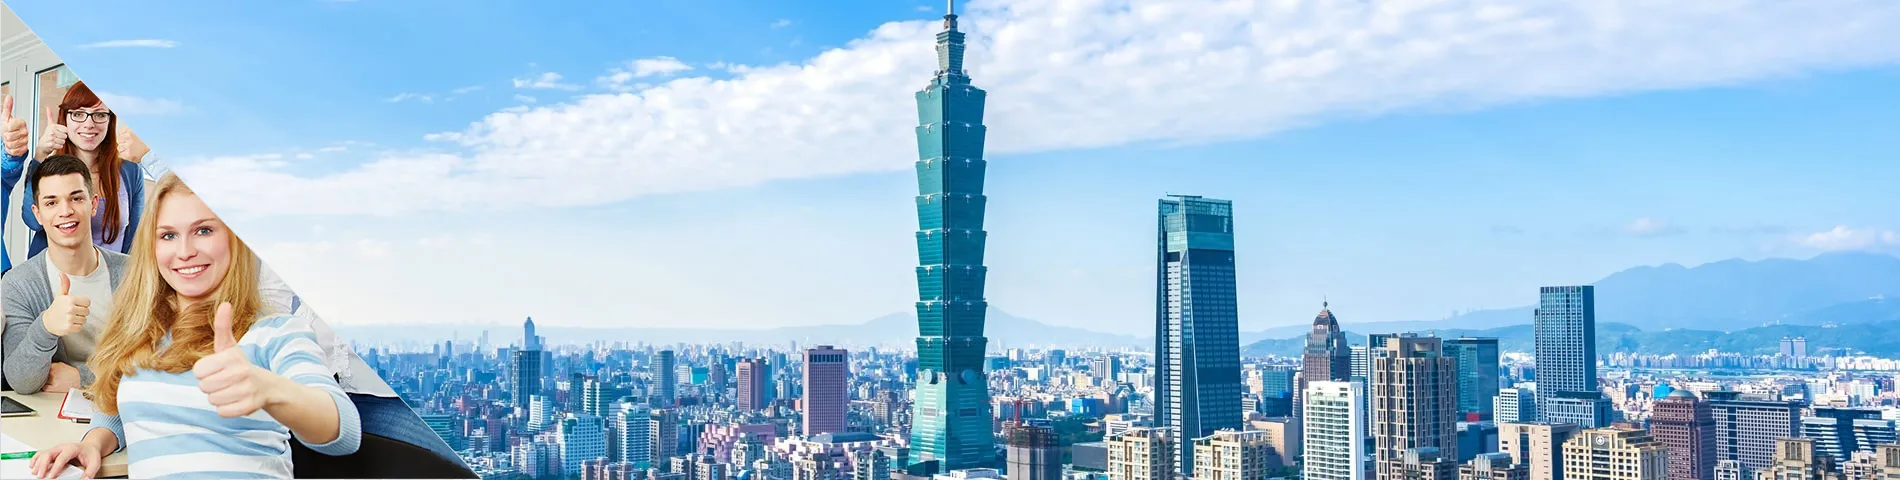 Taipei - 